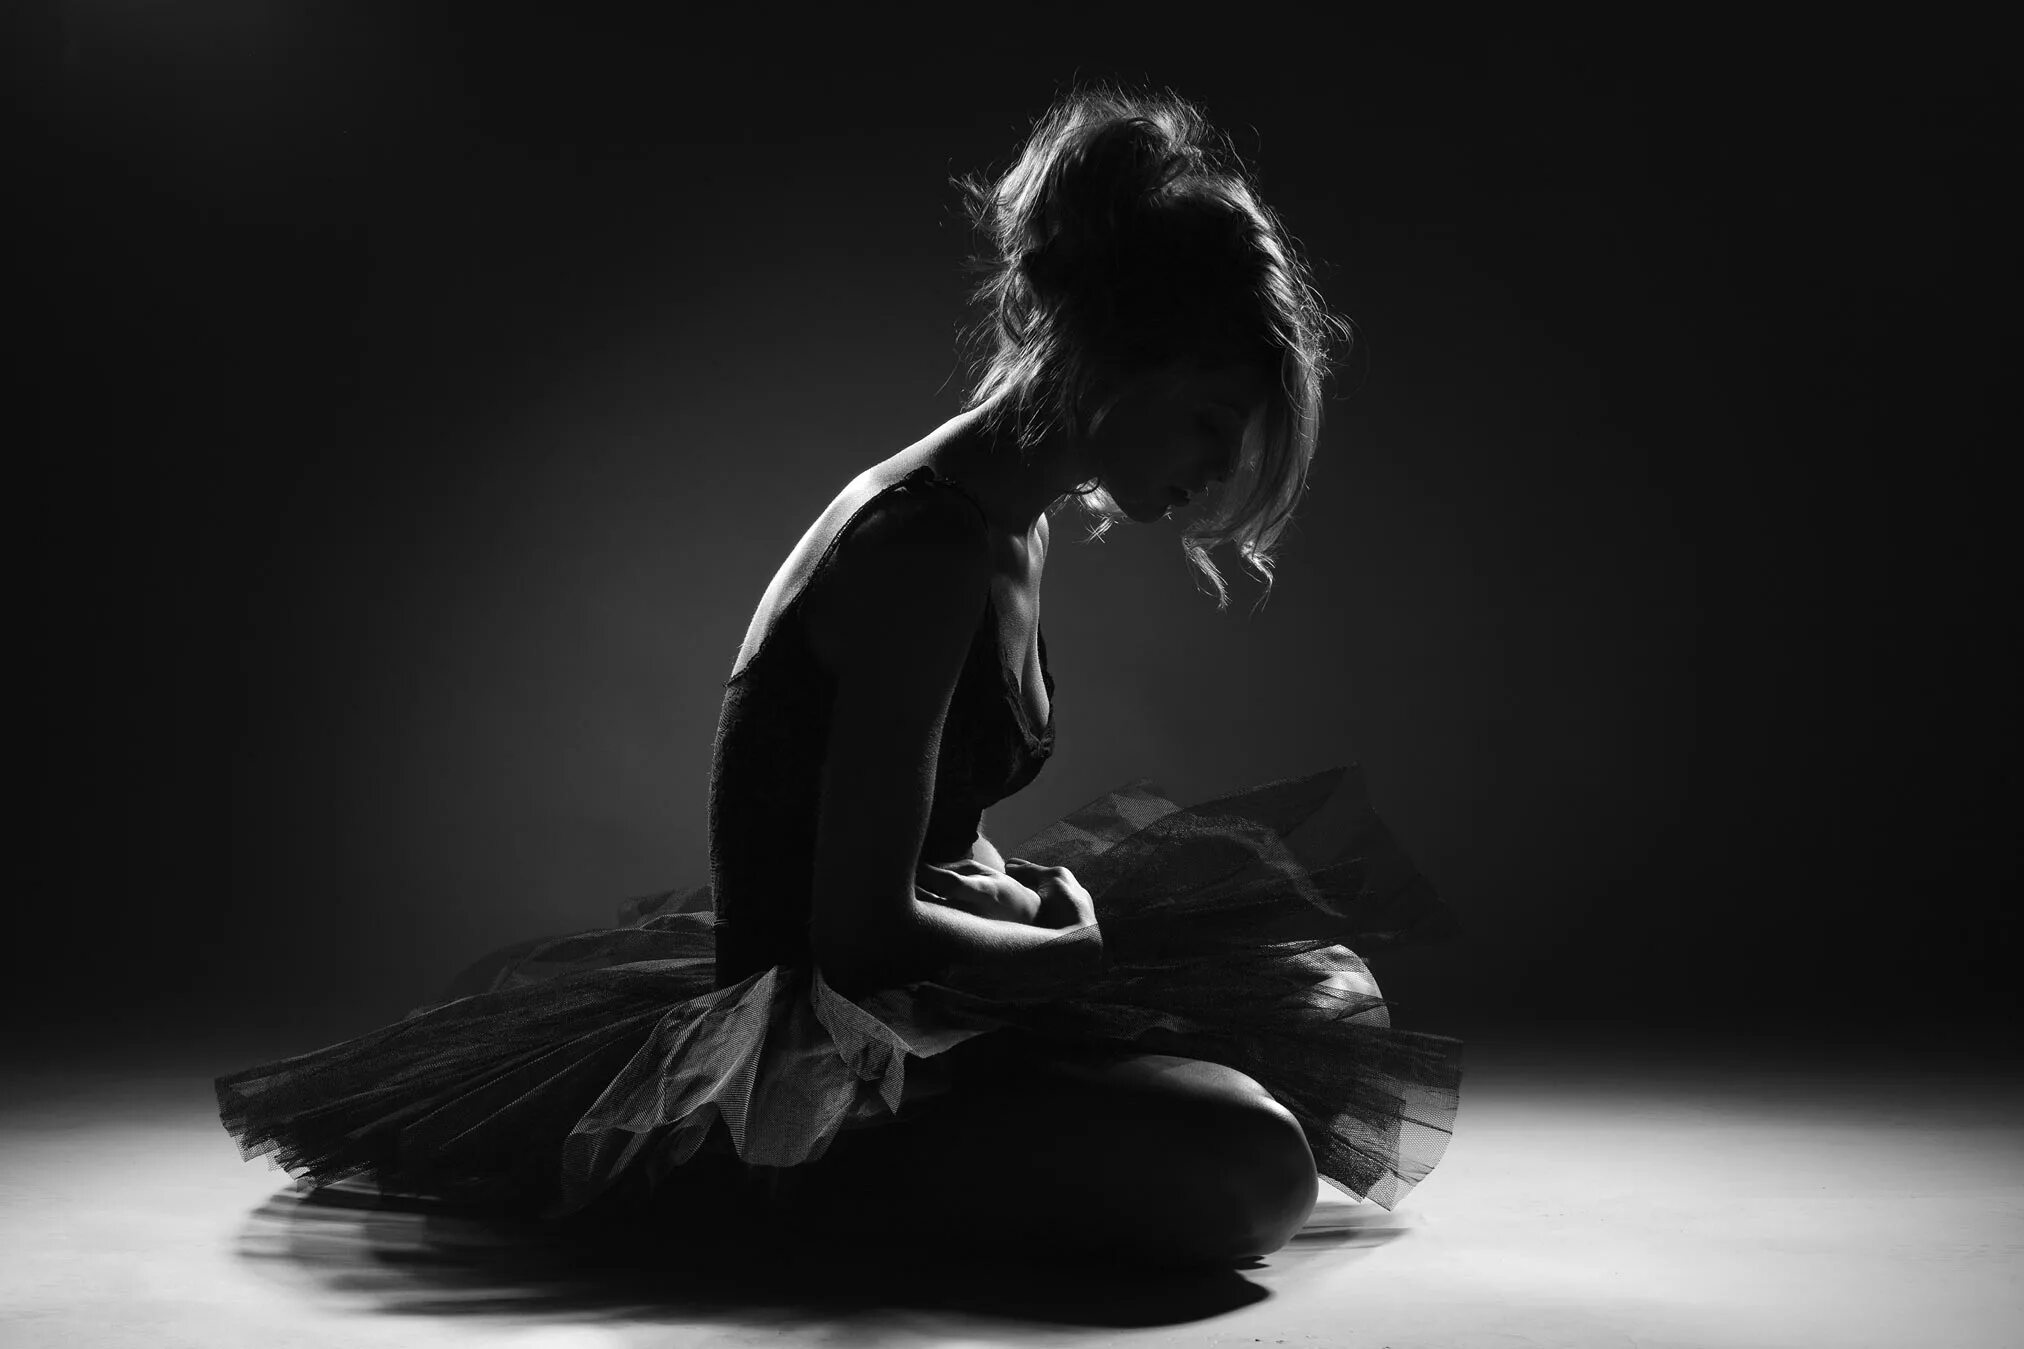 В белом платье так недолго танцевать мне. Балерина в темноте. Девушка Танцующая в темноте. Девушка танцует в темноте. Танцующая балерина в темноте.